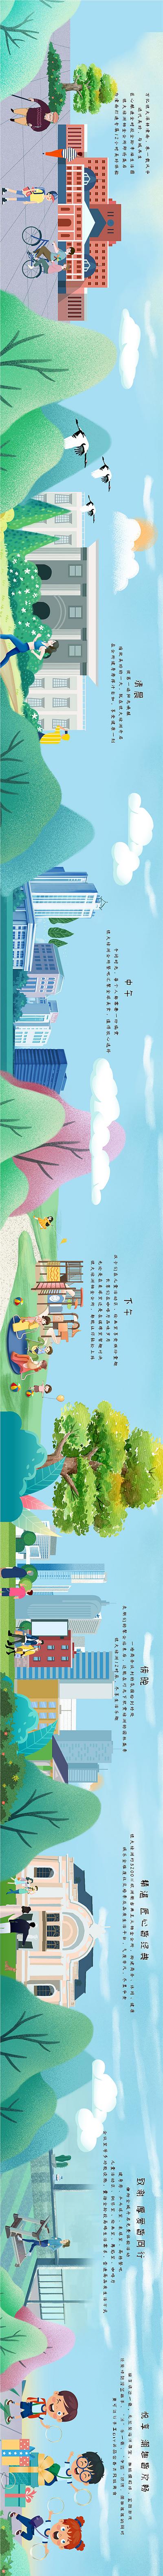 南门网 海报 广告展板 横版 房地产 手绘 插画 长图 价值点